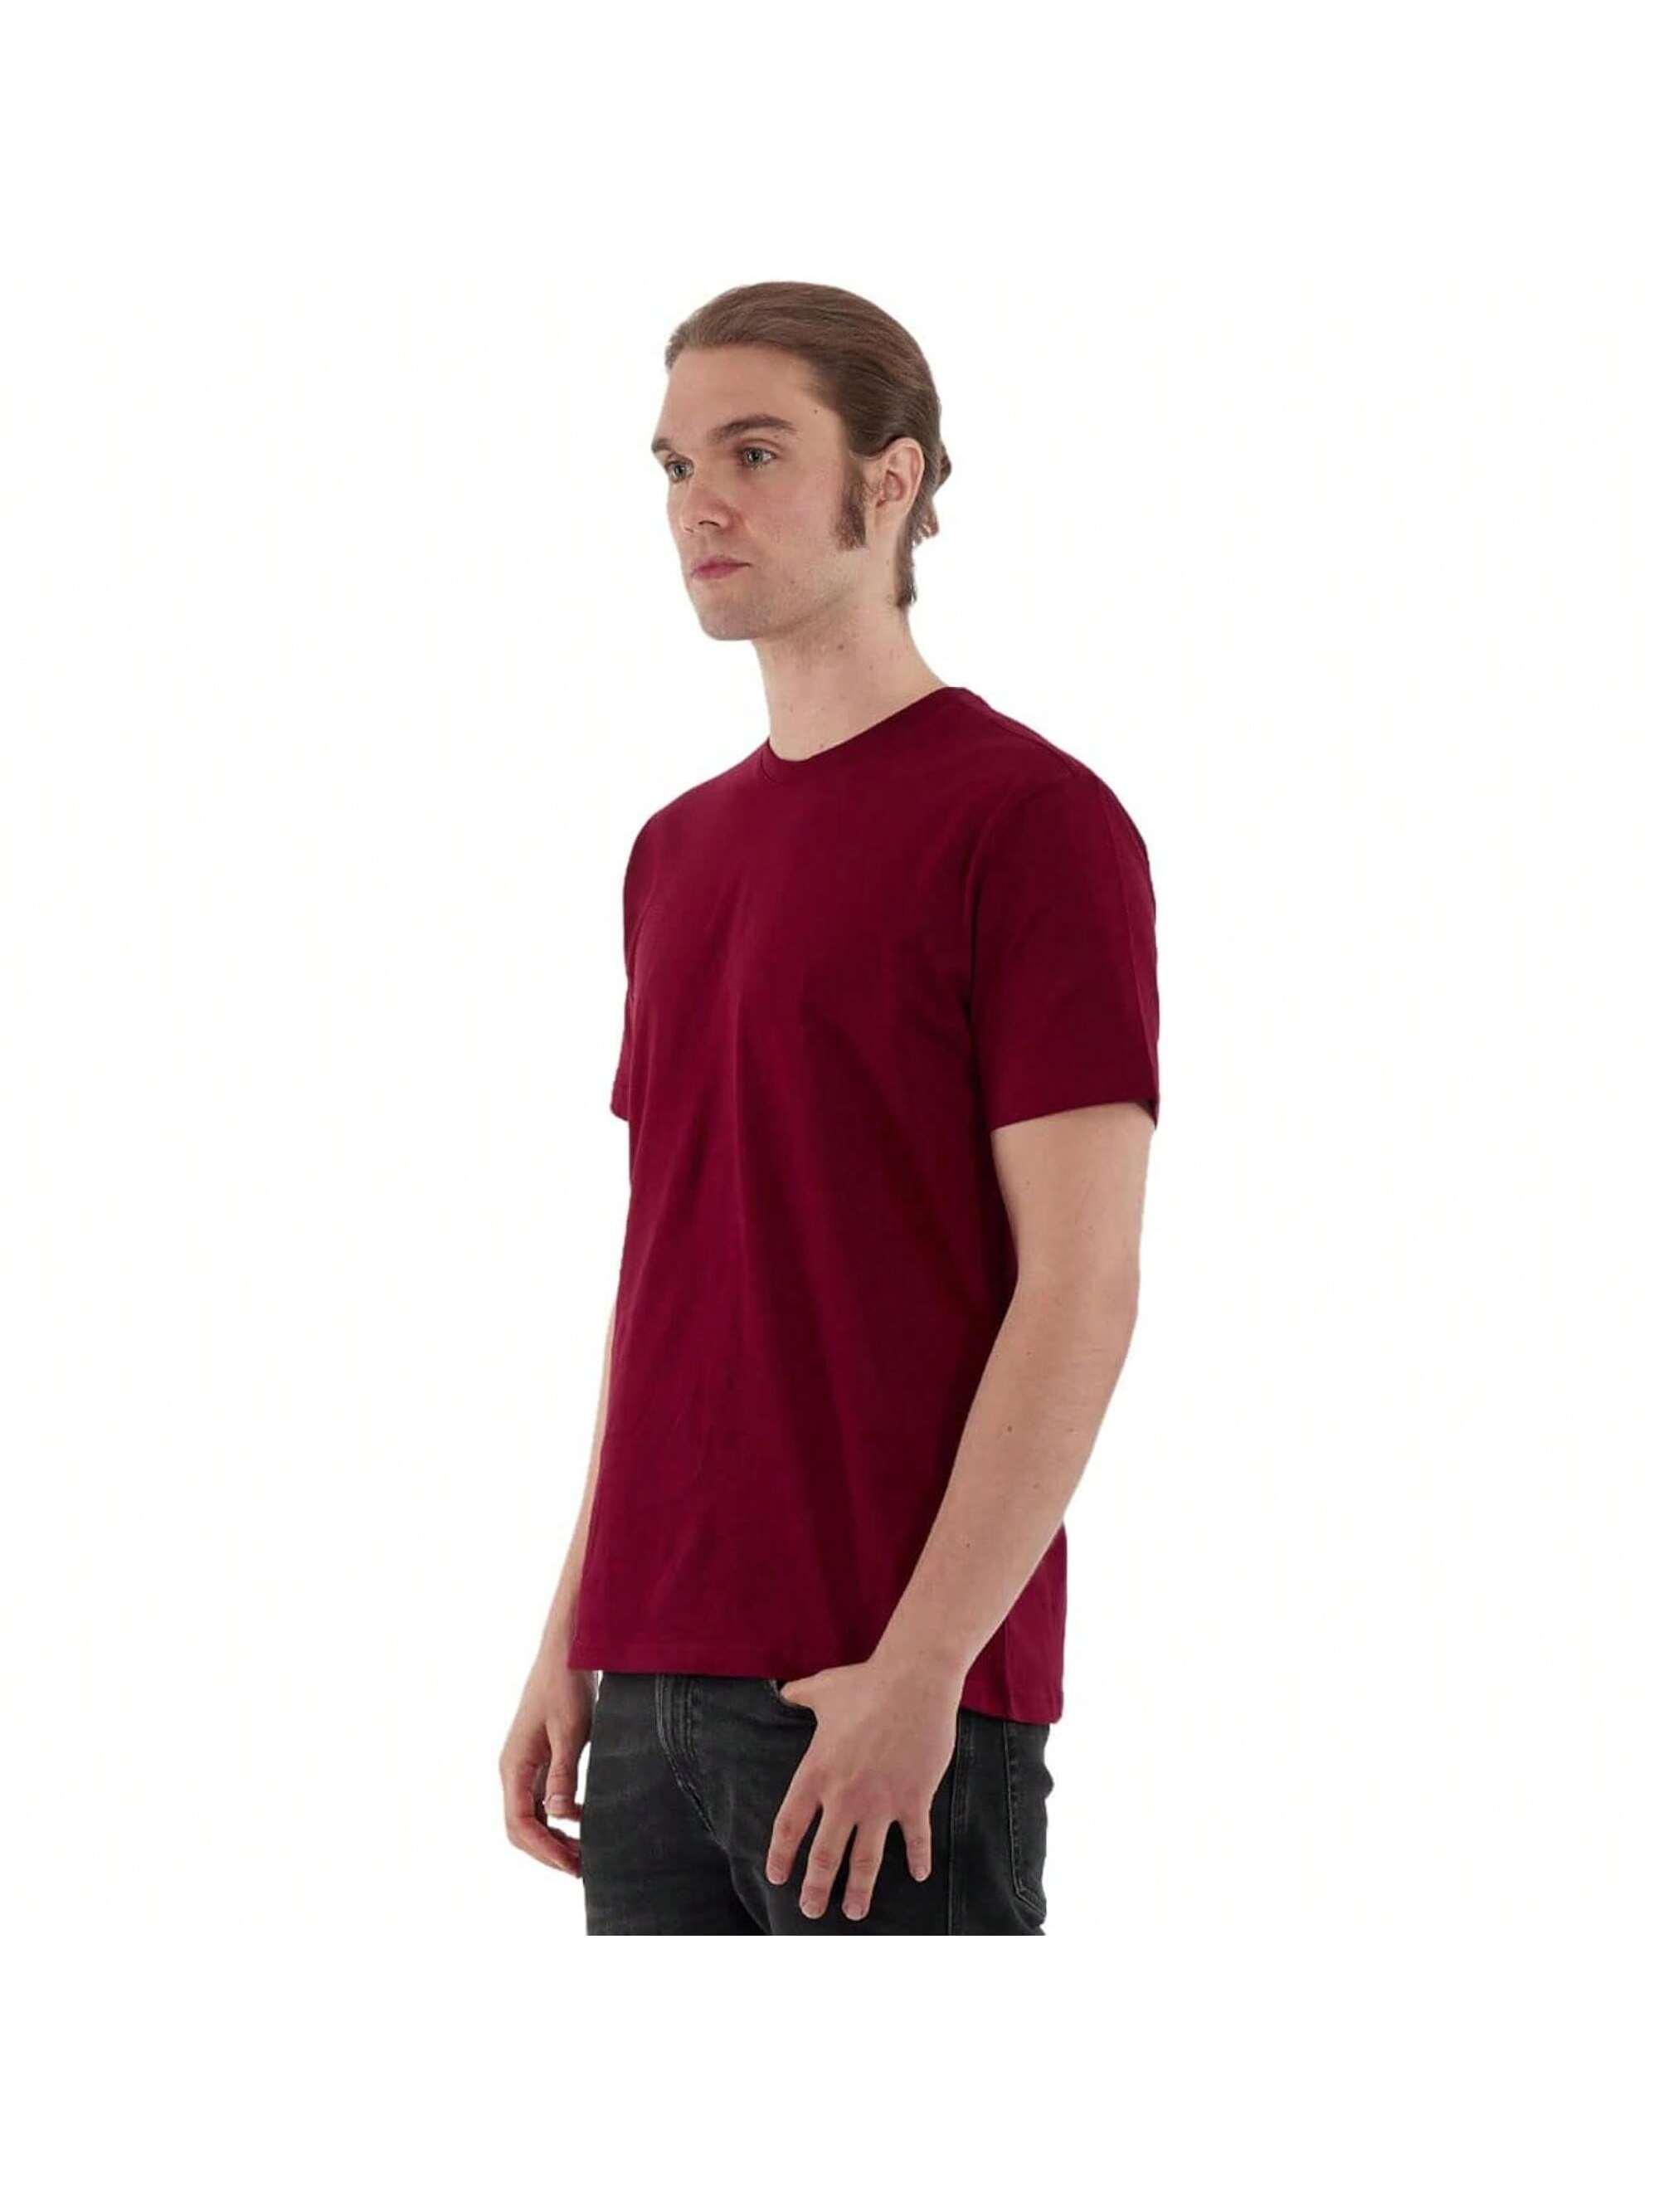 Мужская хлопковая футболка премиум-класса с круглым вырезом Rich Cotton� NVY-M, бургундия футболка laredoute футболка с круглым вырезом shark m черный